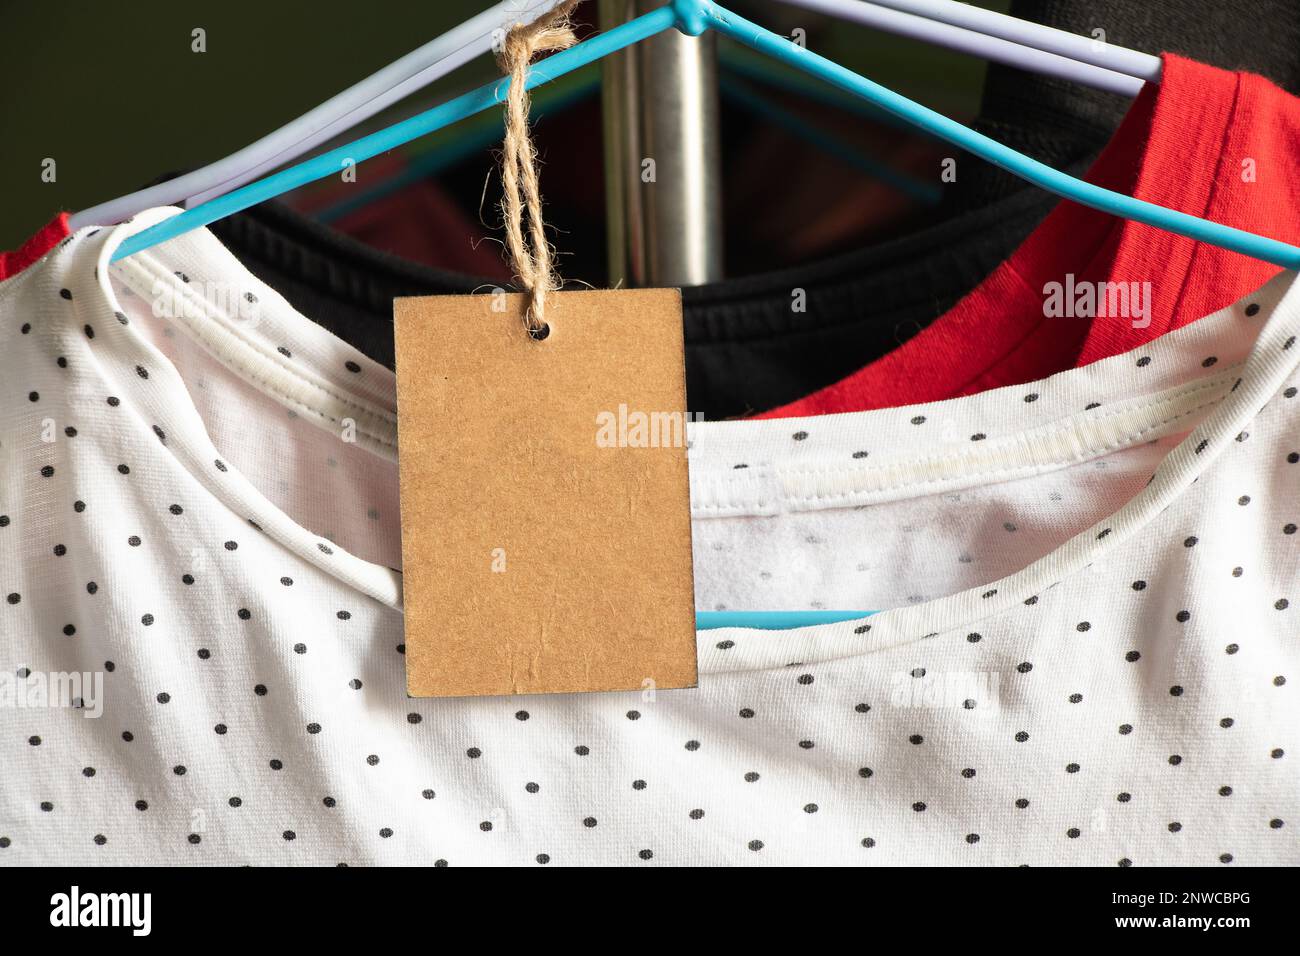 Karton, Verpackung, lässig, Kleidung, Branding, Shopping, braunes Papier Preisschild wiegt auf Kleidung auf einem Rack auf einem Kleiderbügel im Verkaufsbereich, blank pri Stockfoto